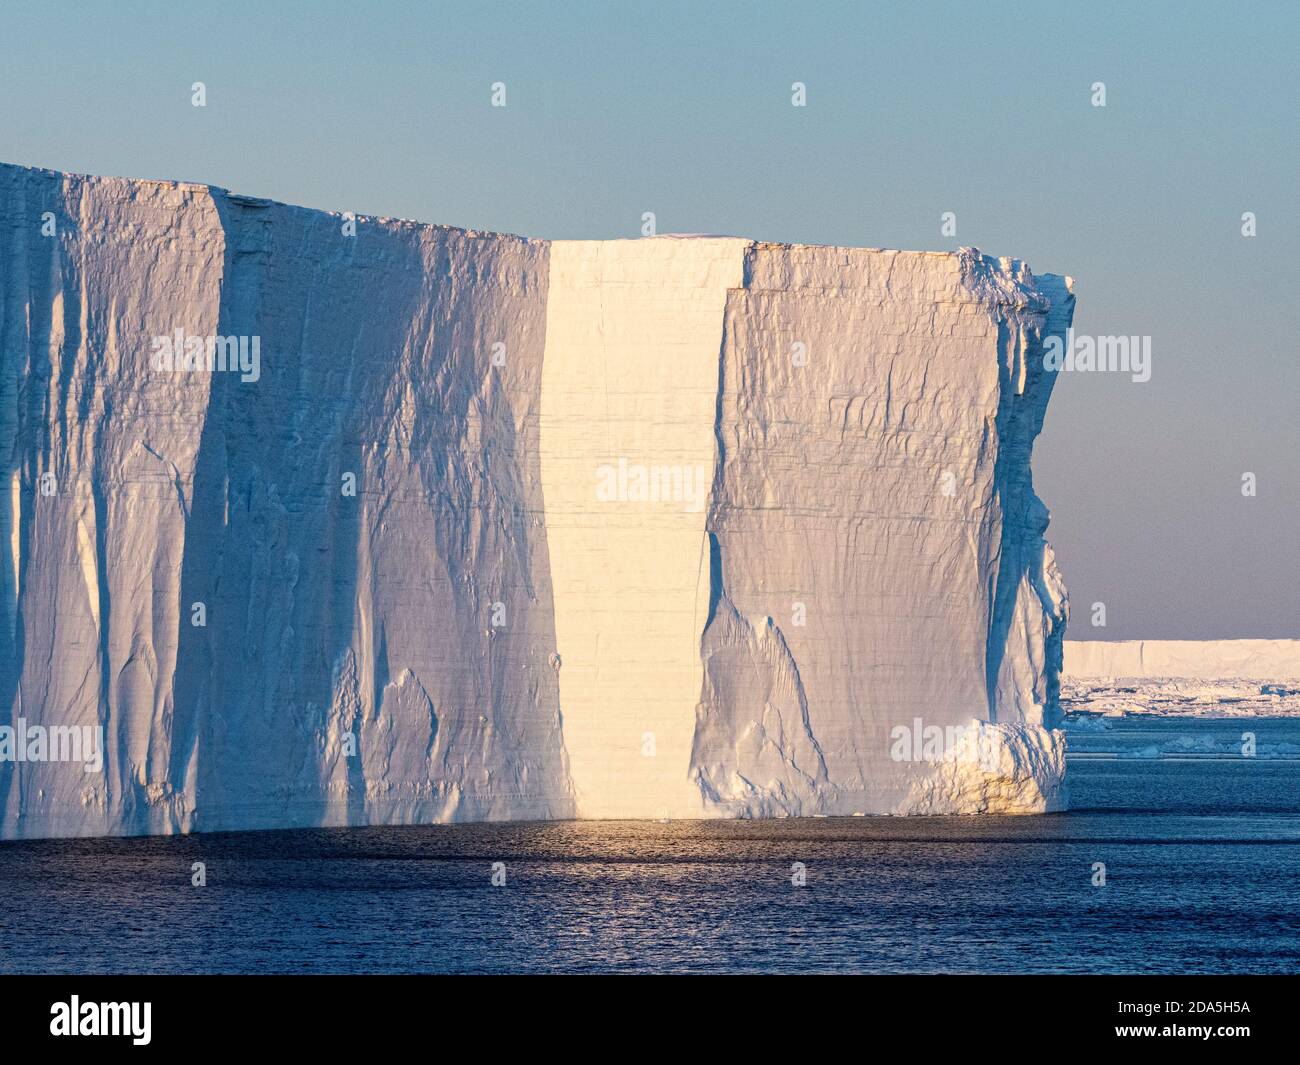 Glace de mer, icebergs tabulaires et glace à brises dans le golfe d'Erebus et de Terror, dans la mer de Weddell, en Antarctique. Banque D'Images